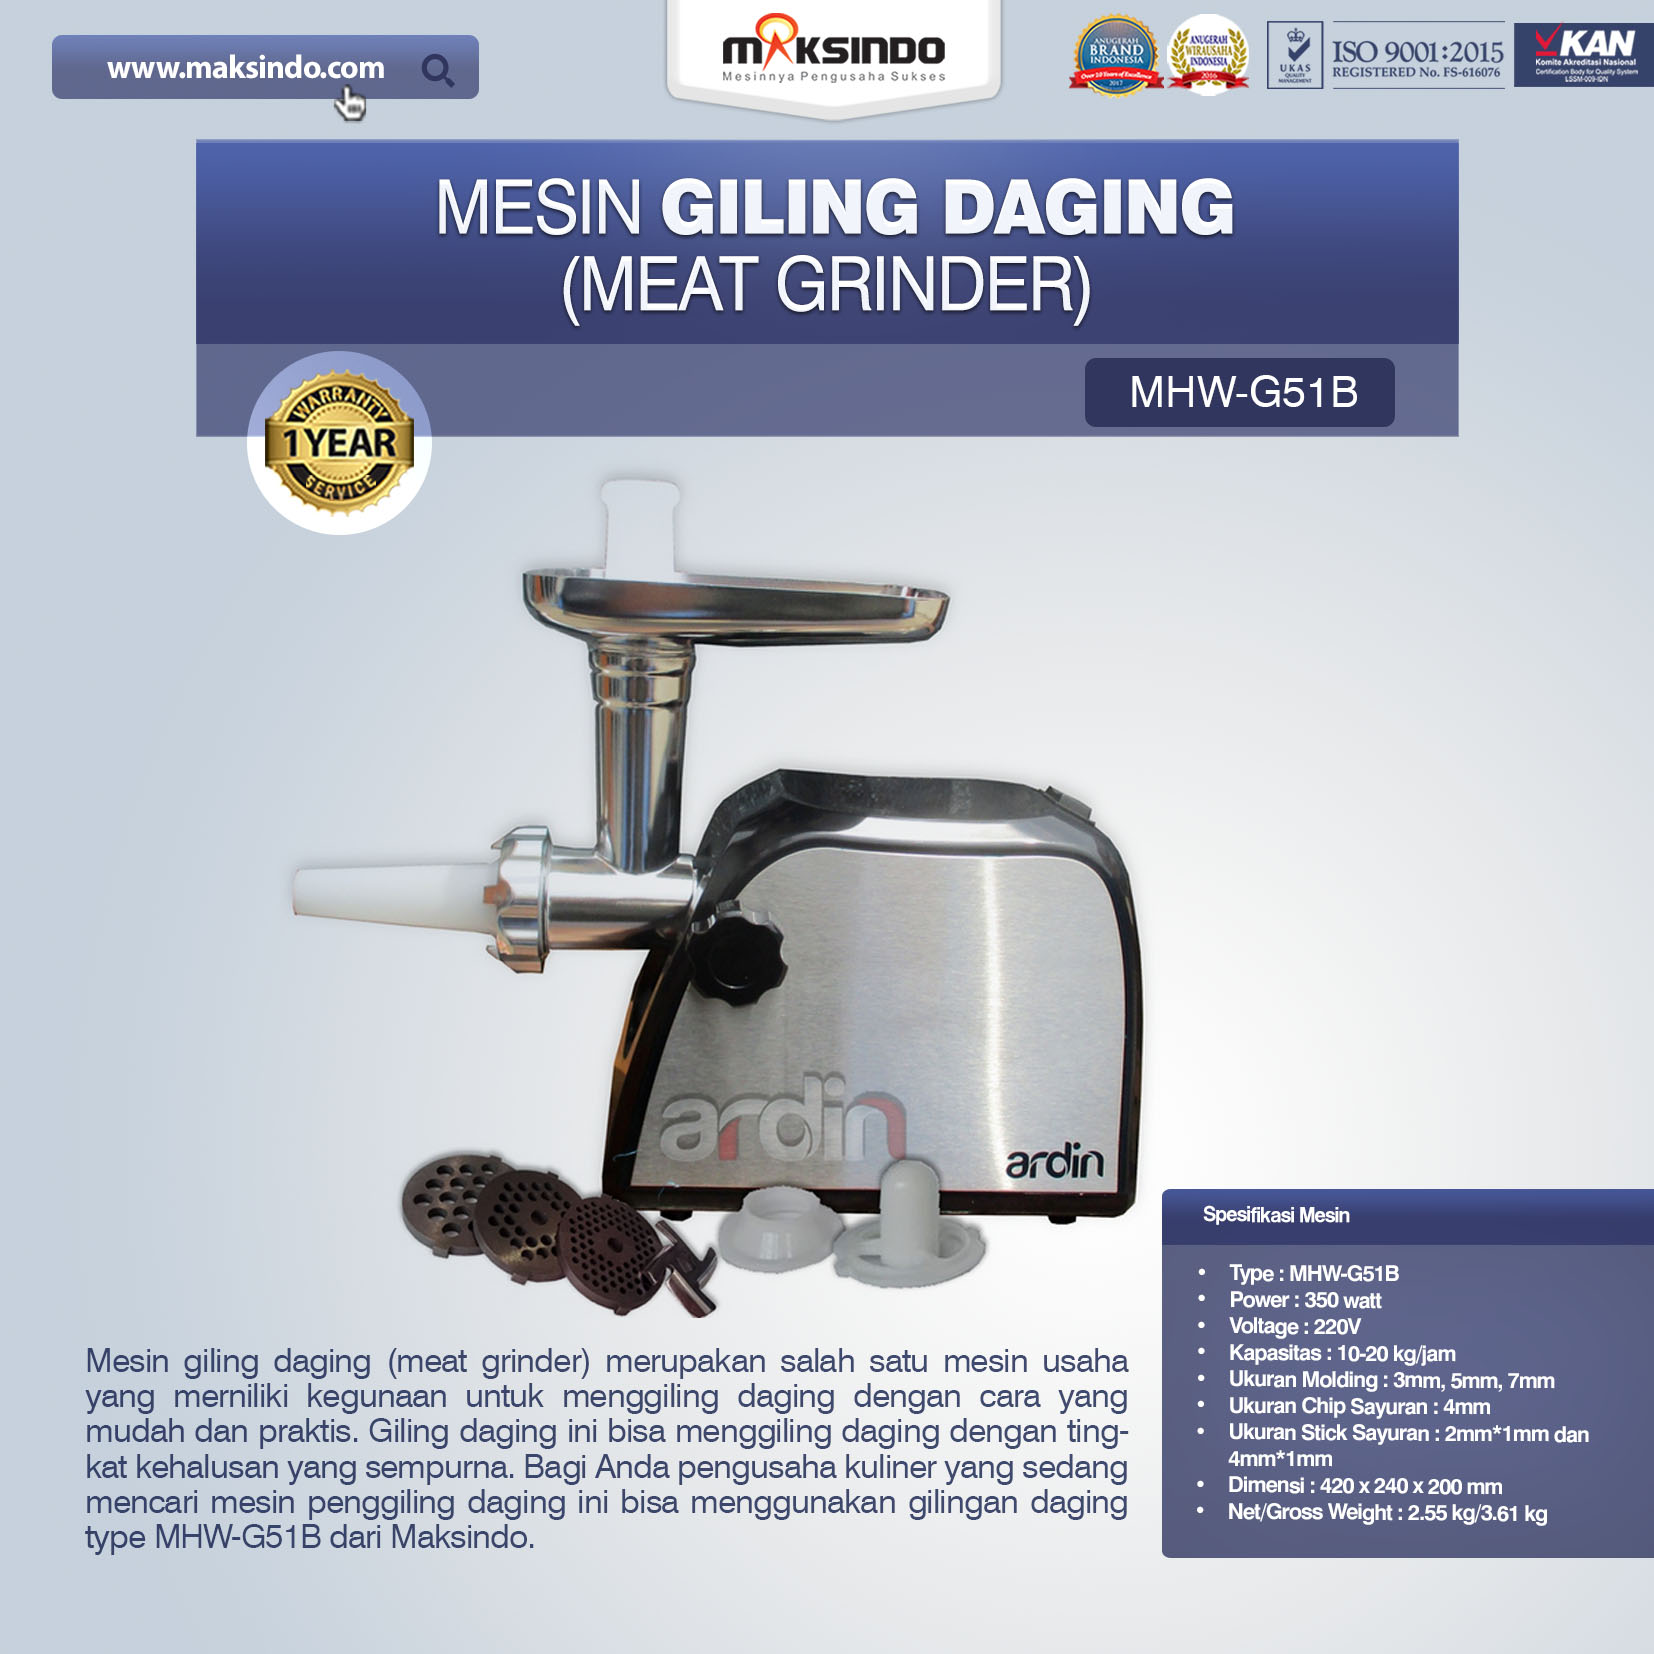 Jual Mesin Giling Daging (Meat Grinder) MHW-G51B di Blitar